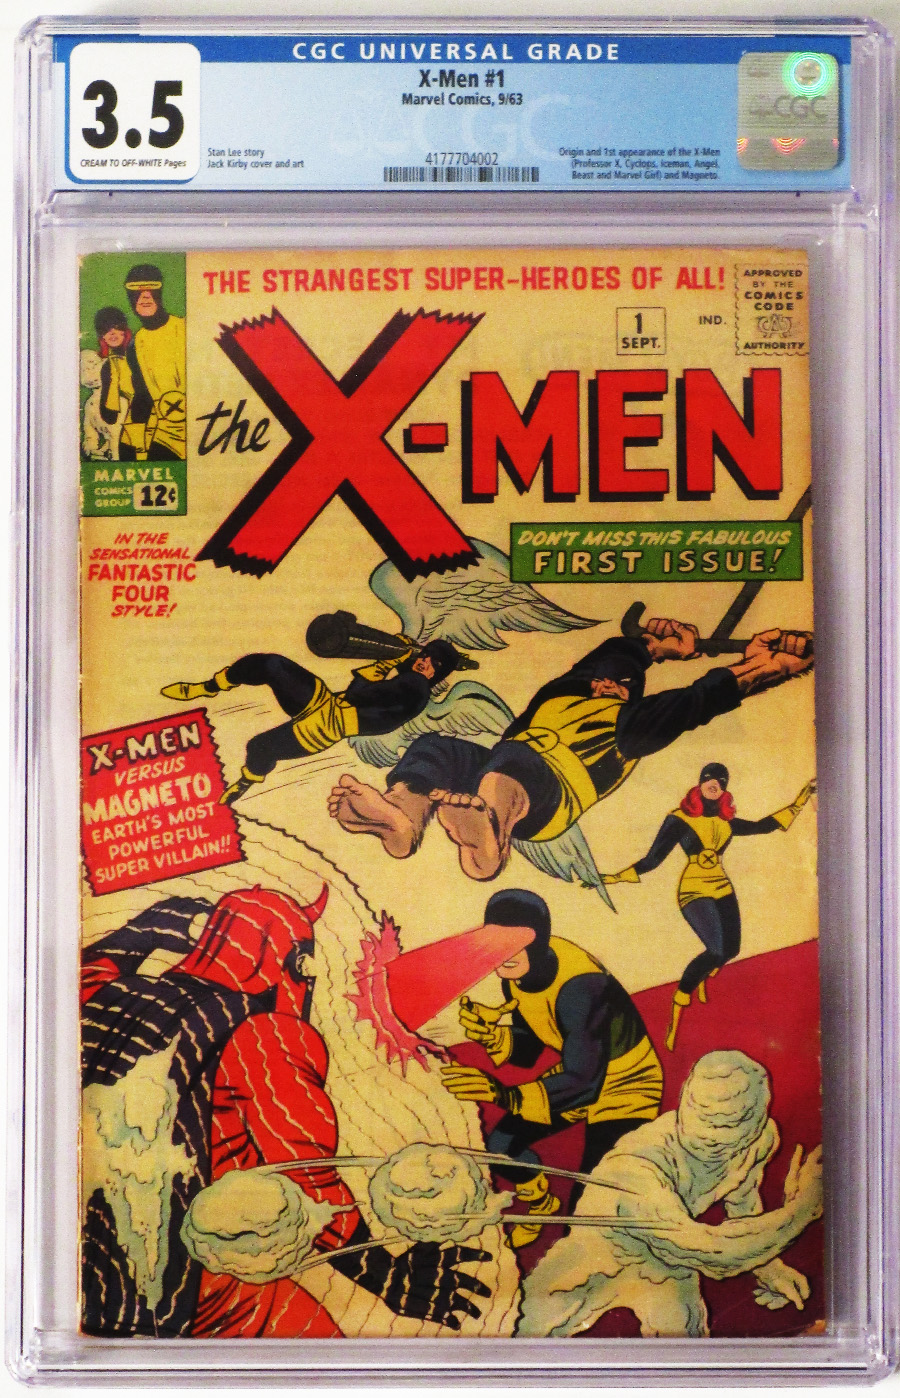 X-Men Vol 1 #1 Cover E CGC Graded 3.5